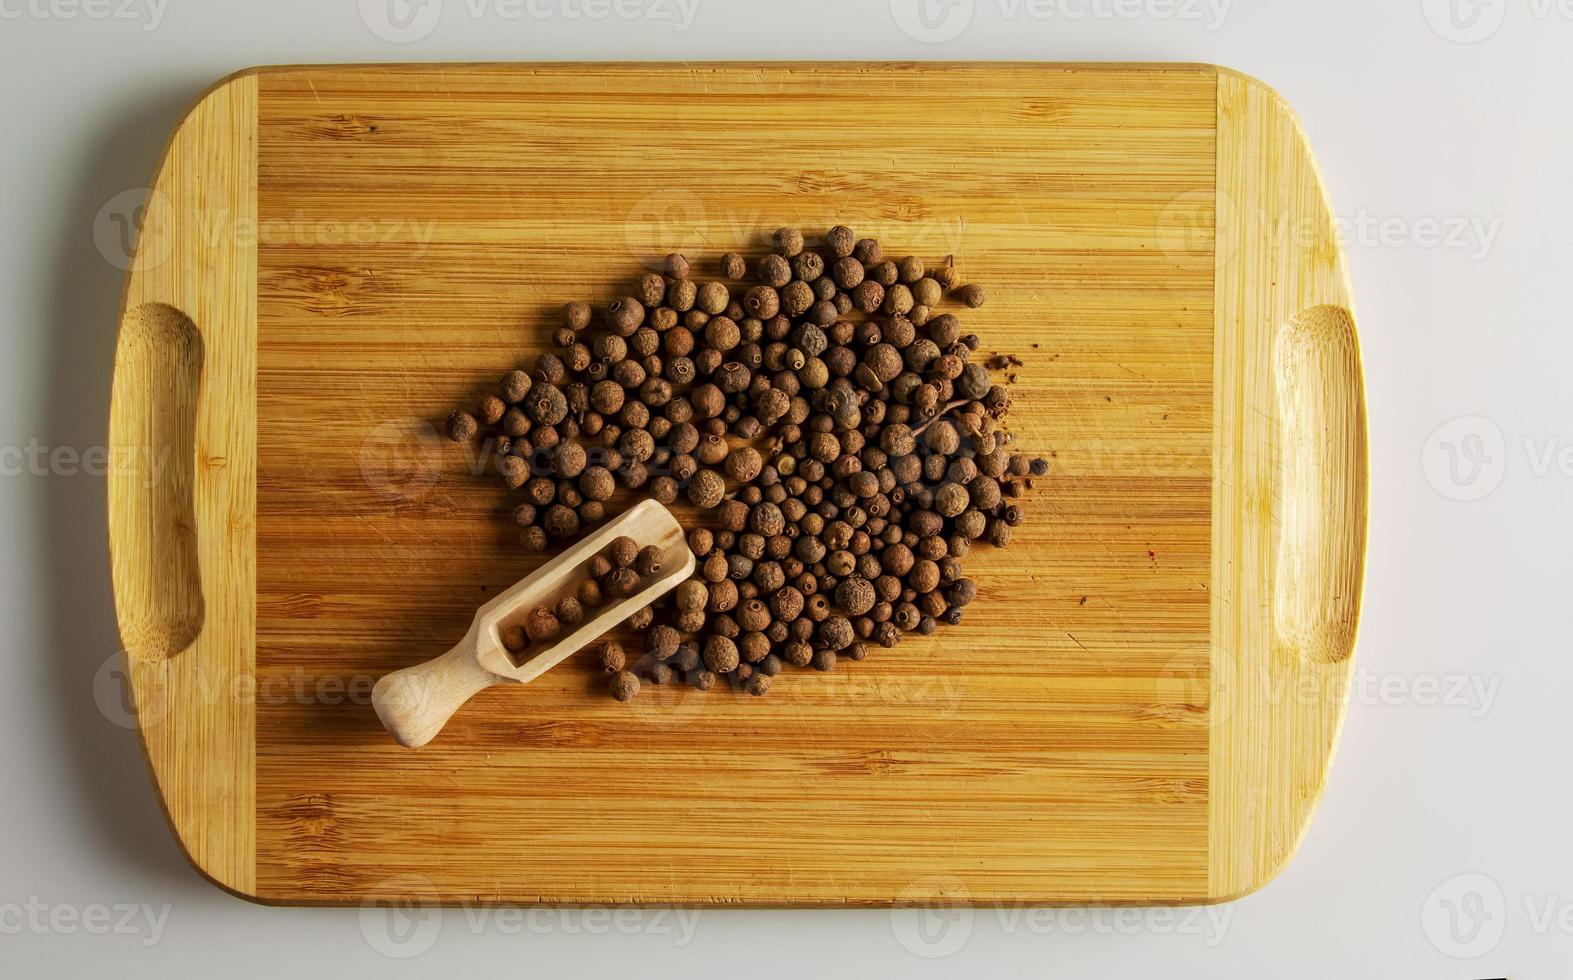 Piment-Erbsen würzen. aromatisches Gewürz für Lebensmittel. Hintergrund getrockneter Samen Pimenterbsen auf einem hölzernen Küchenbrett mit einem Messlöffel. foto